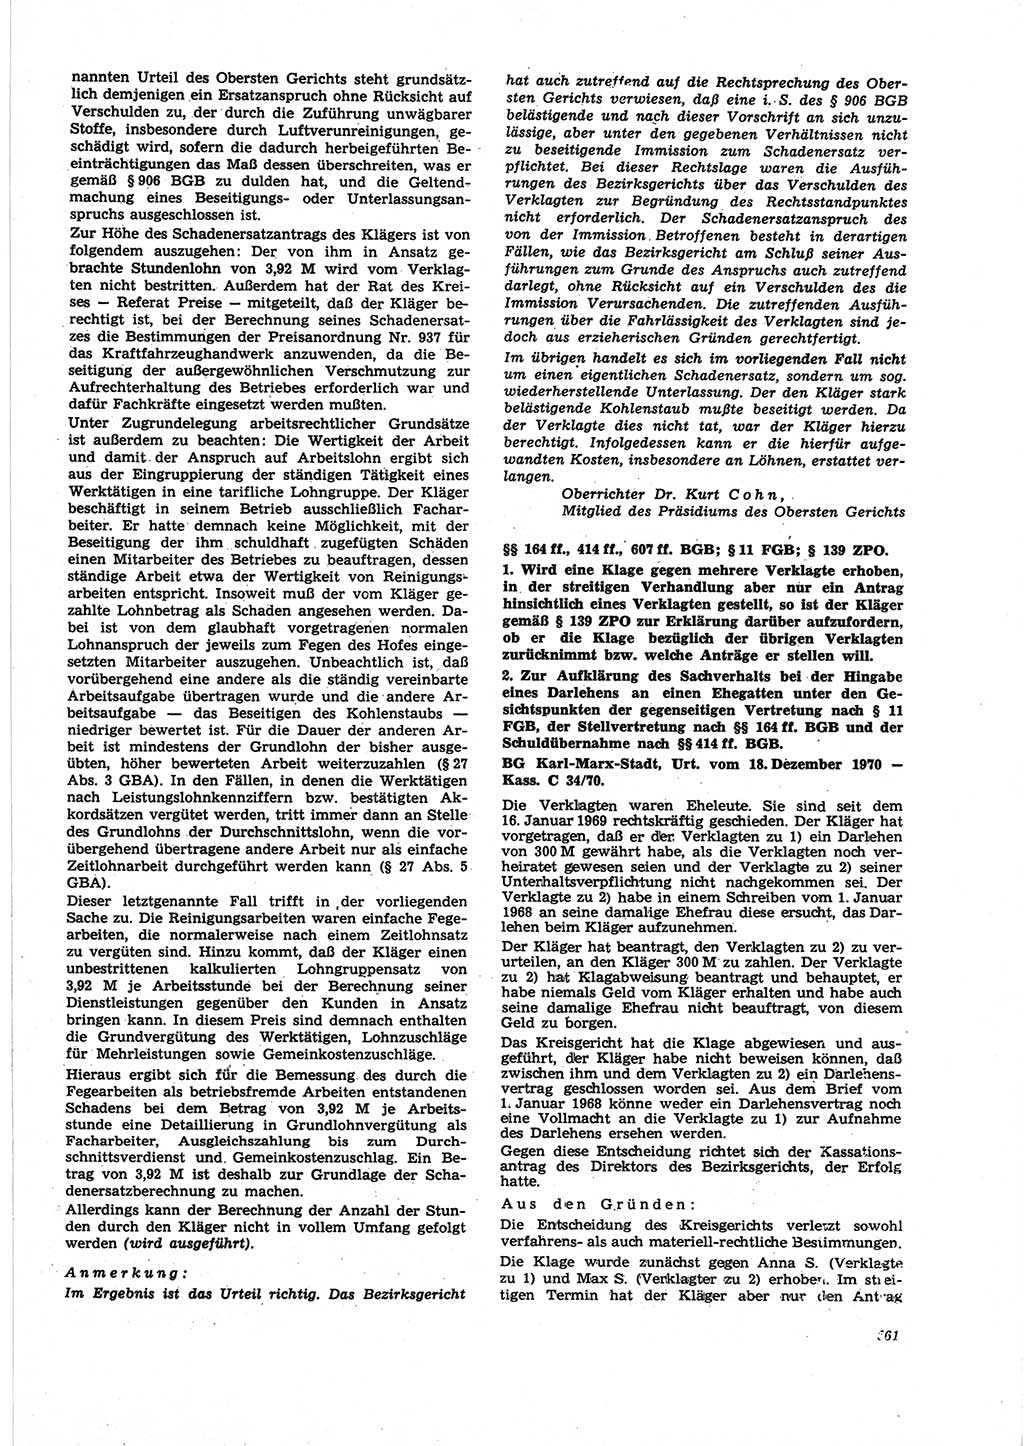 Neue Justiz (NJ), Zeitschrift für Recht und Rechtswissenschaft [Deutsche Demokratische Republik (DDR)], 25. Jahrgang 1971, Seite 561 (NJ DDR 1971, S. 561)